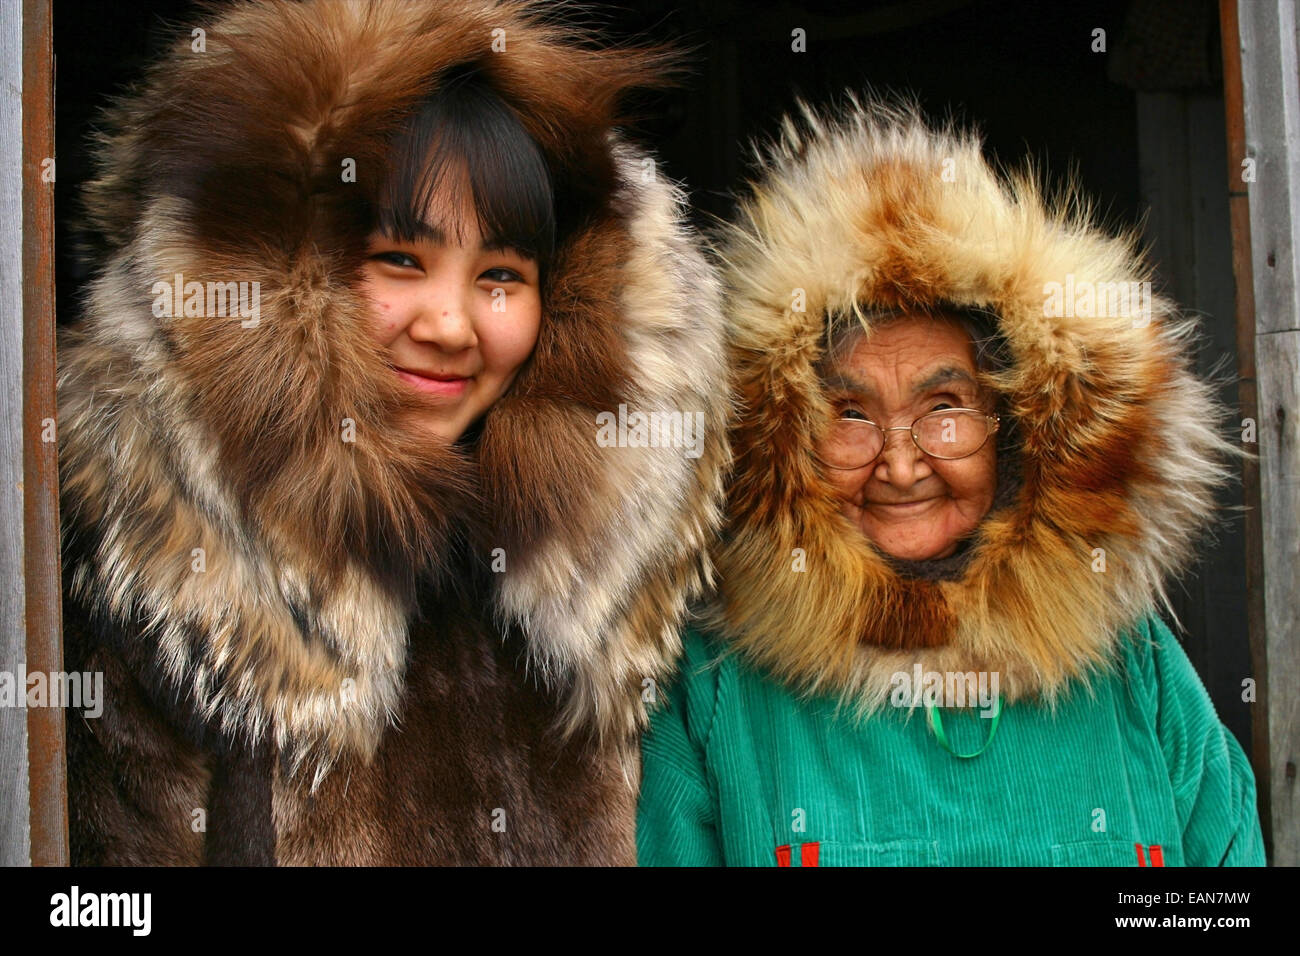 Abbigliamento d'alasca immagini e fotografie stock ad alta risoluzione -  Alamy